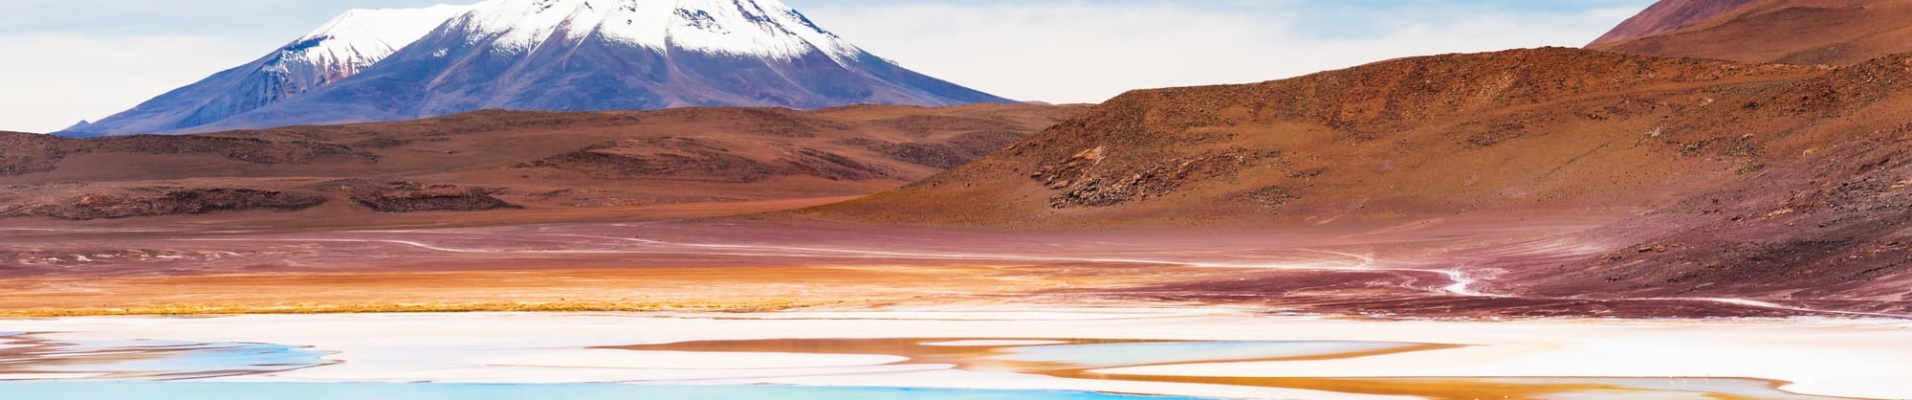 Volcan et lagune du Sud Lipez - Bolivie